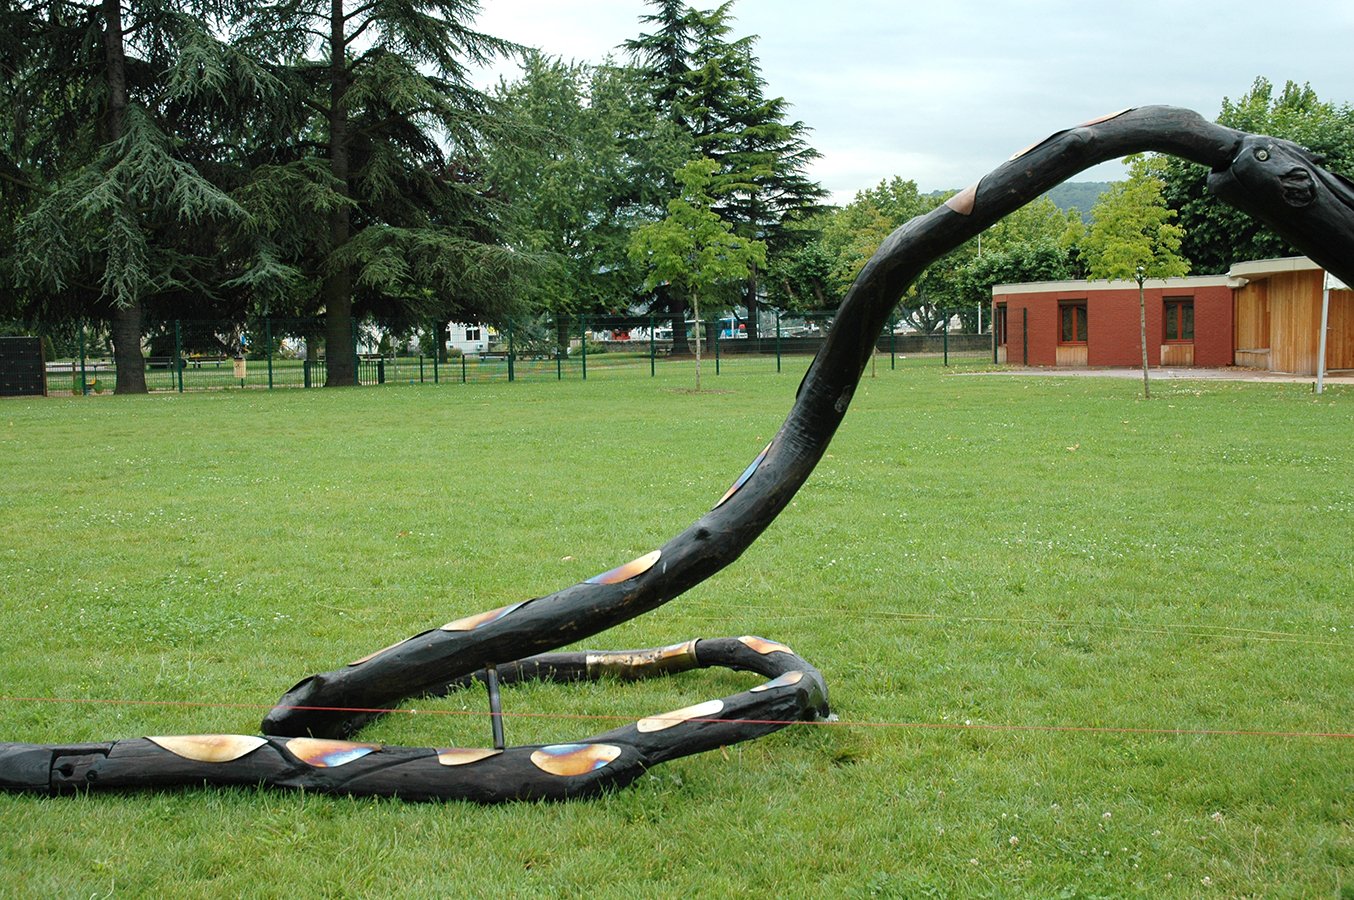 Le Serpent désarticulé 1992 long. 60mètres Charpentières de châtaignier, acier inox (esplanade Château Neuville sur Saône 2007) 